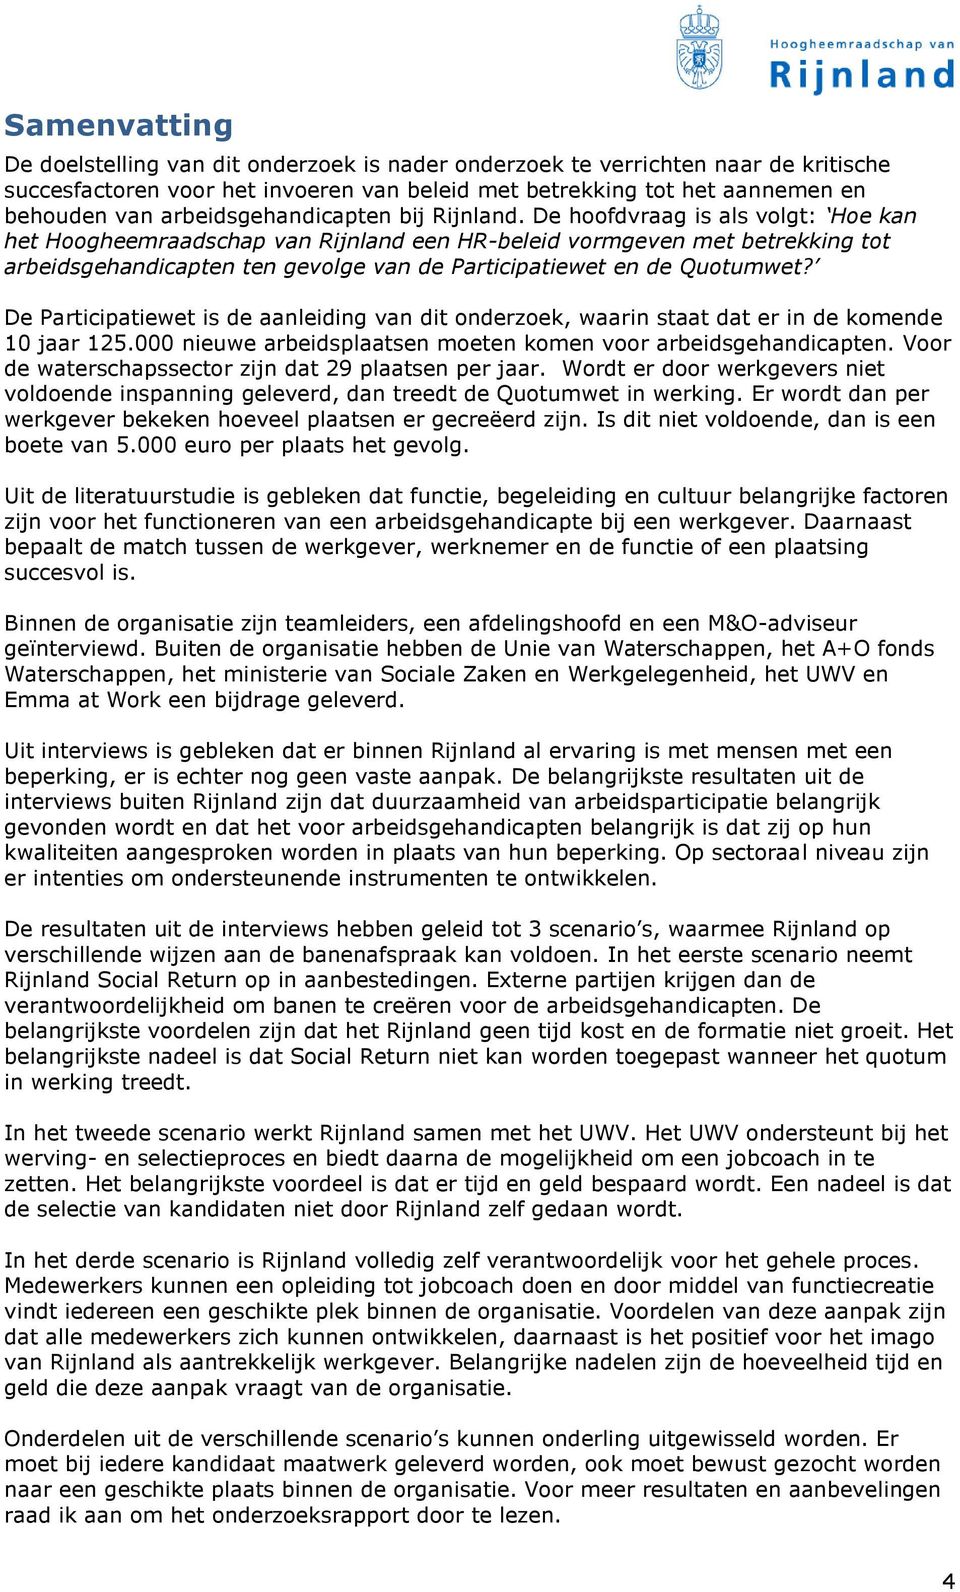 De hoofdvraag is als volgt: Hoe kan het Hoogheemraadschap van Rijnland een HR-beleid vormgeven met betrekking tot arbeidsgehandicapten ten gevolge van de Participatiewet en de Quotumwet?